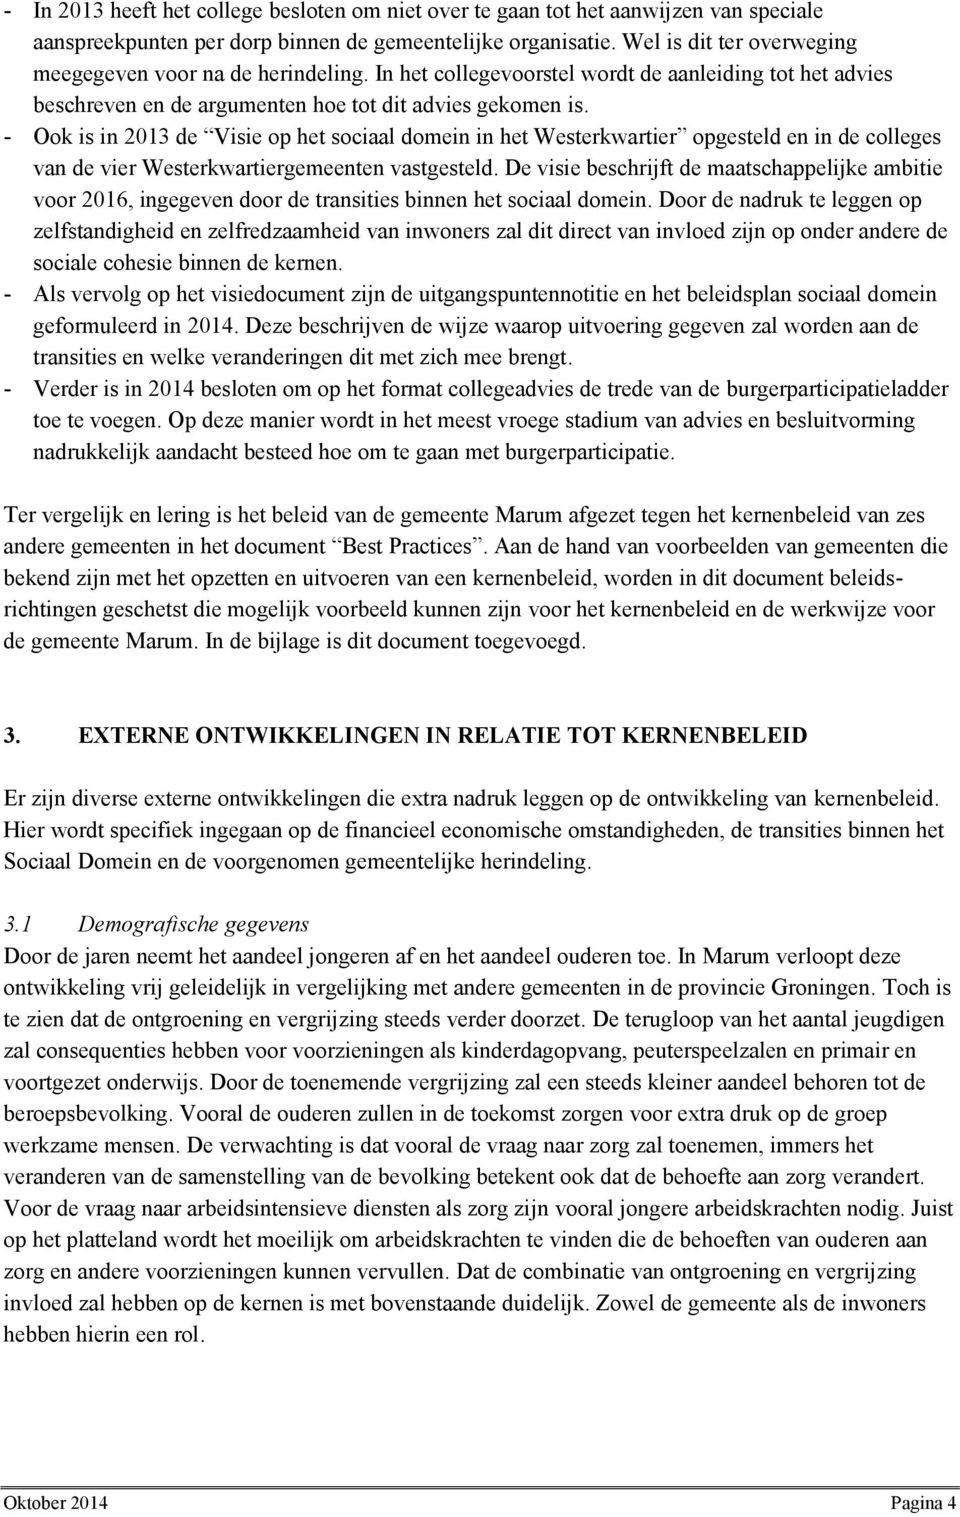 - Ook is in 2013 de Visie op het sociaal domein in het Westerkwartier opgesteld en in de colleges van de vier Westerkwartiergemeenten vastgesteld.